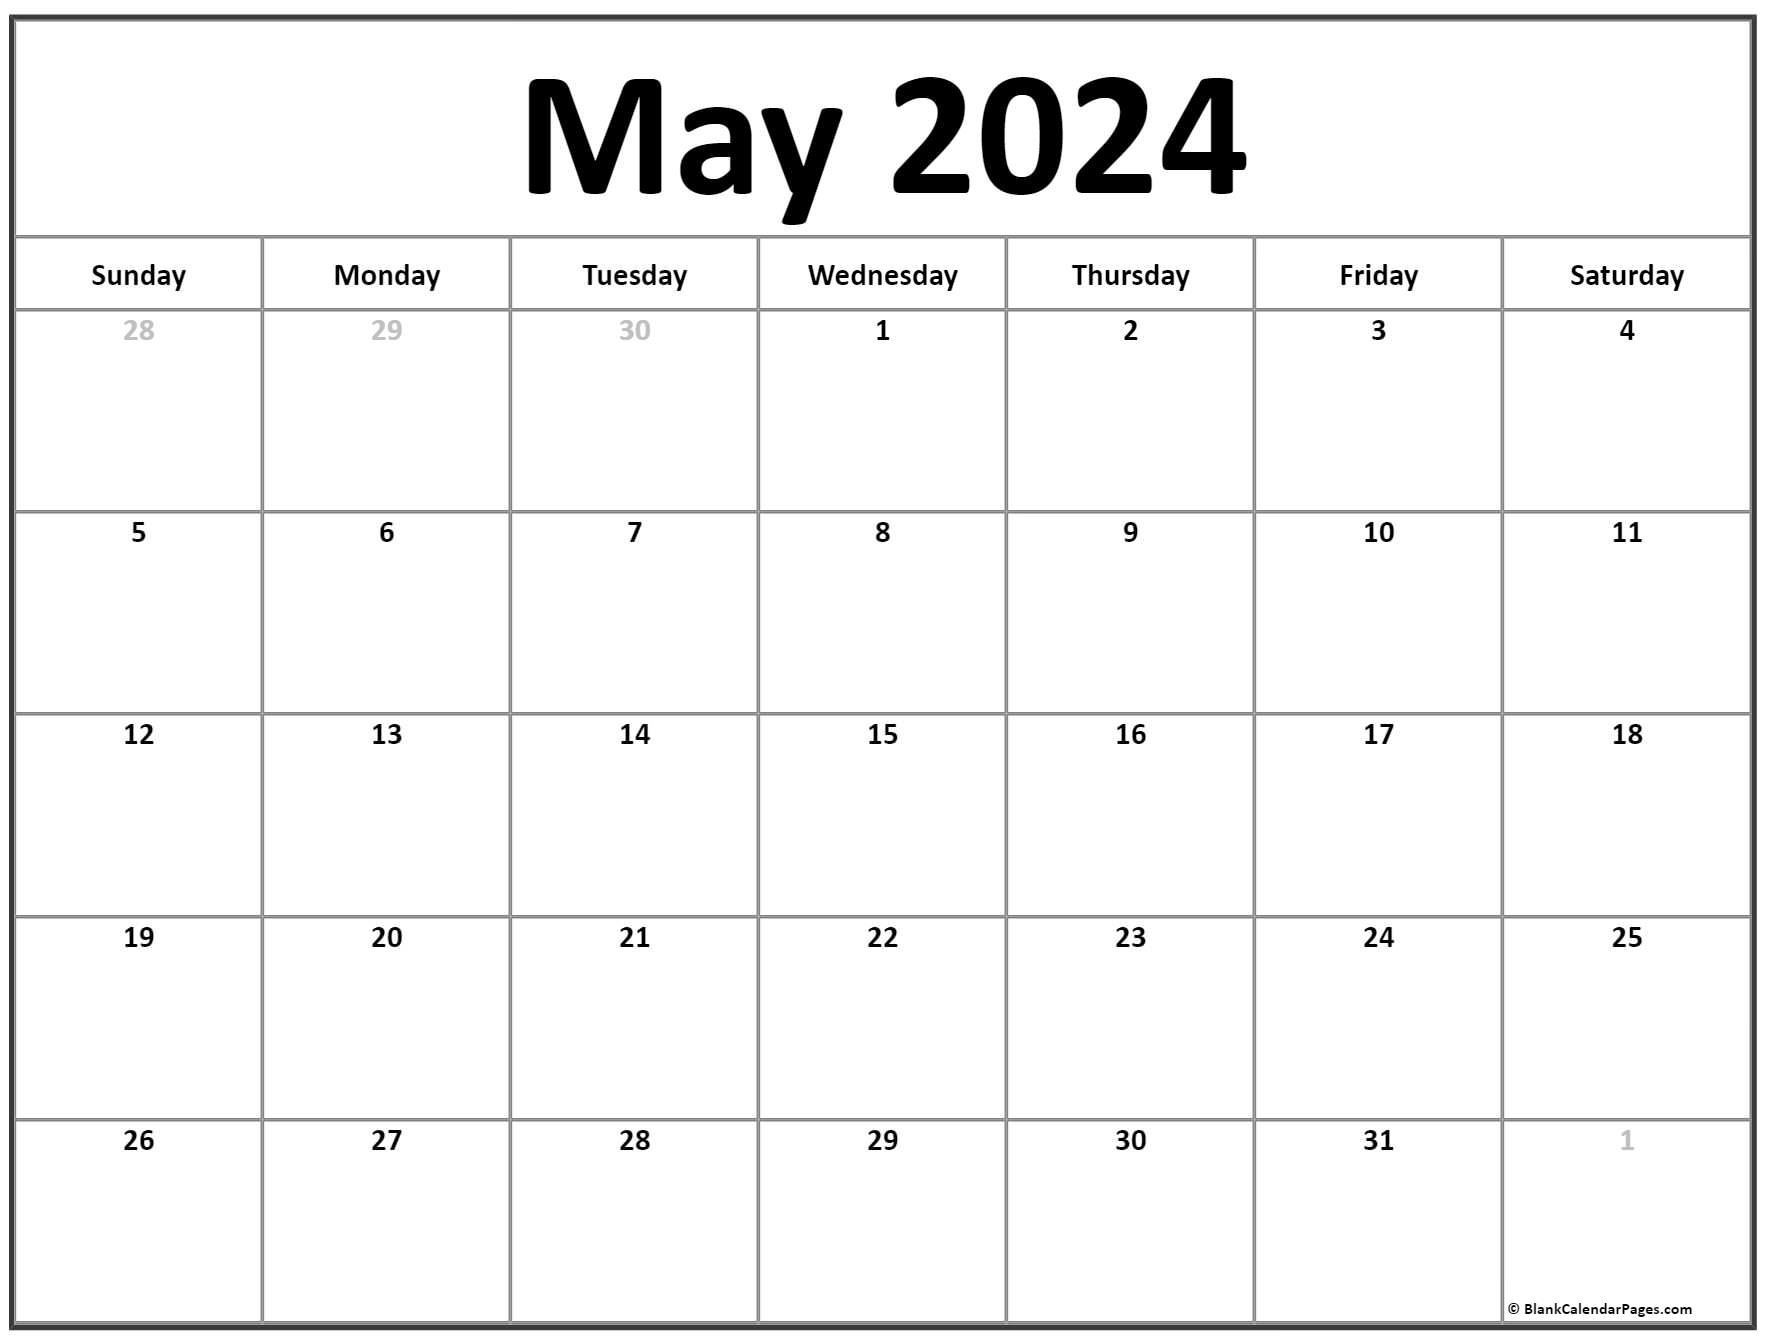 wiki-calendar-2023-printable-by-month-pelajaran